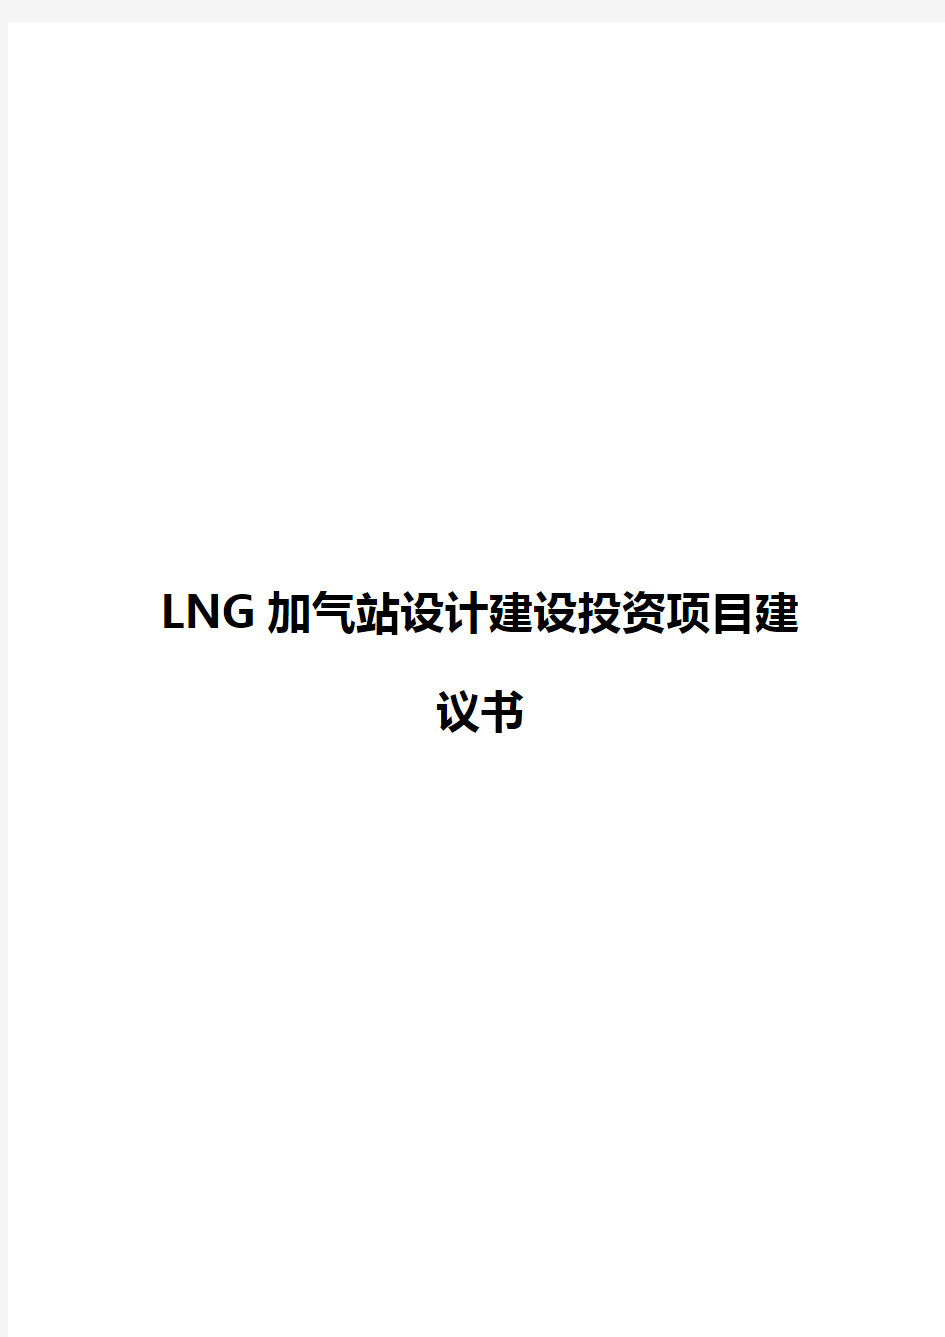 2018年完整版LNG加气站设计及实现建设投资项目可行性研究报告